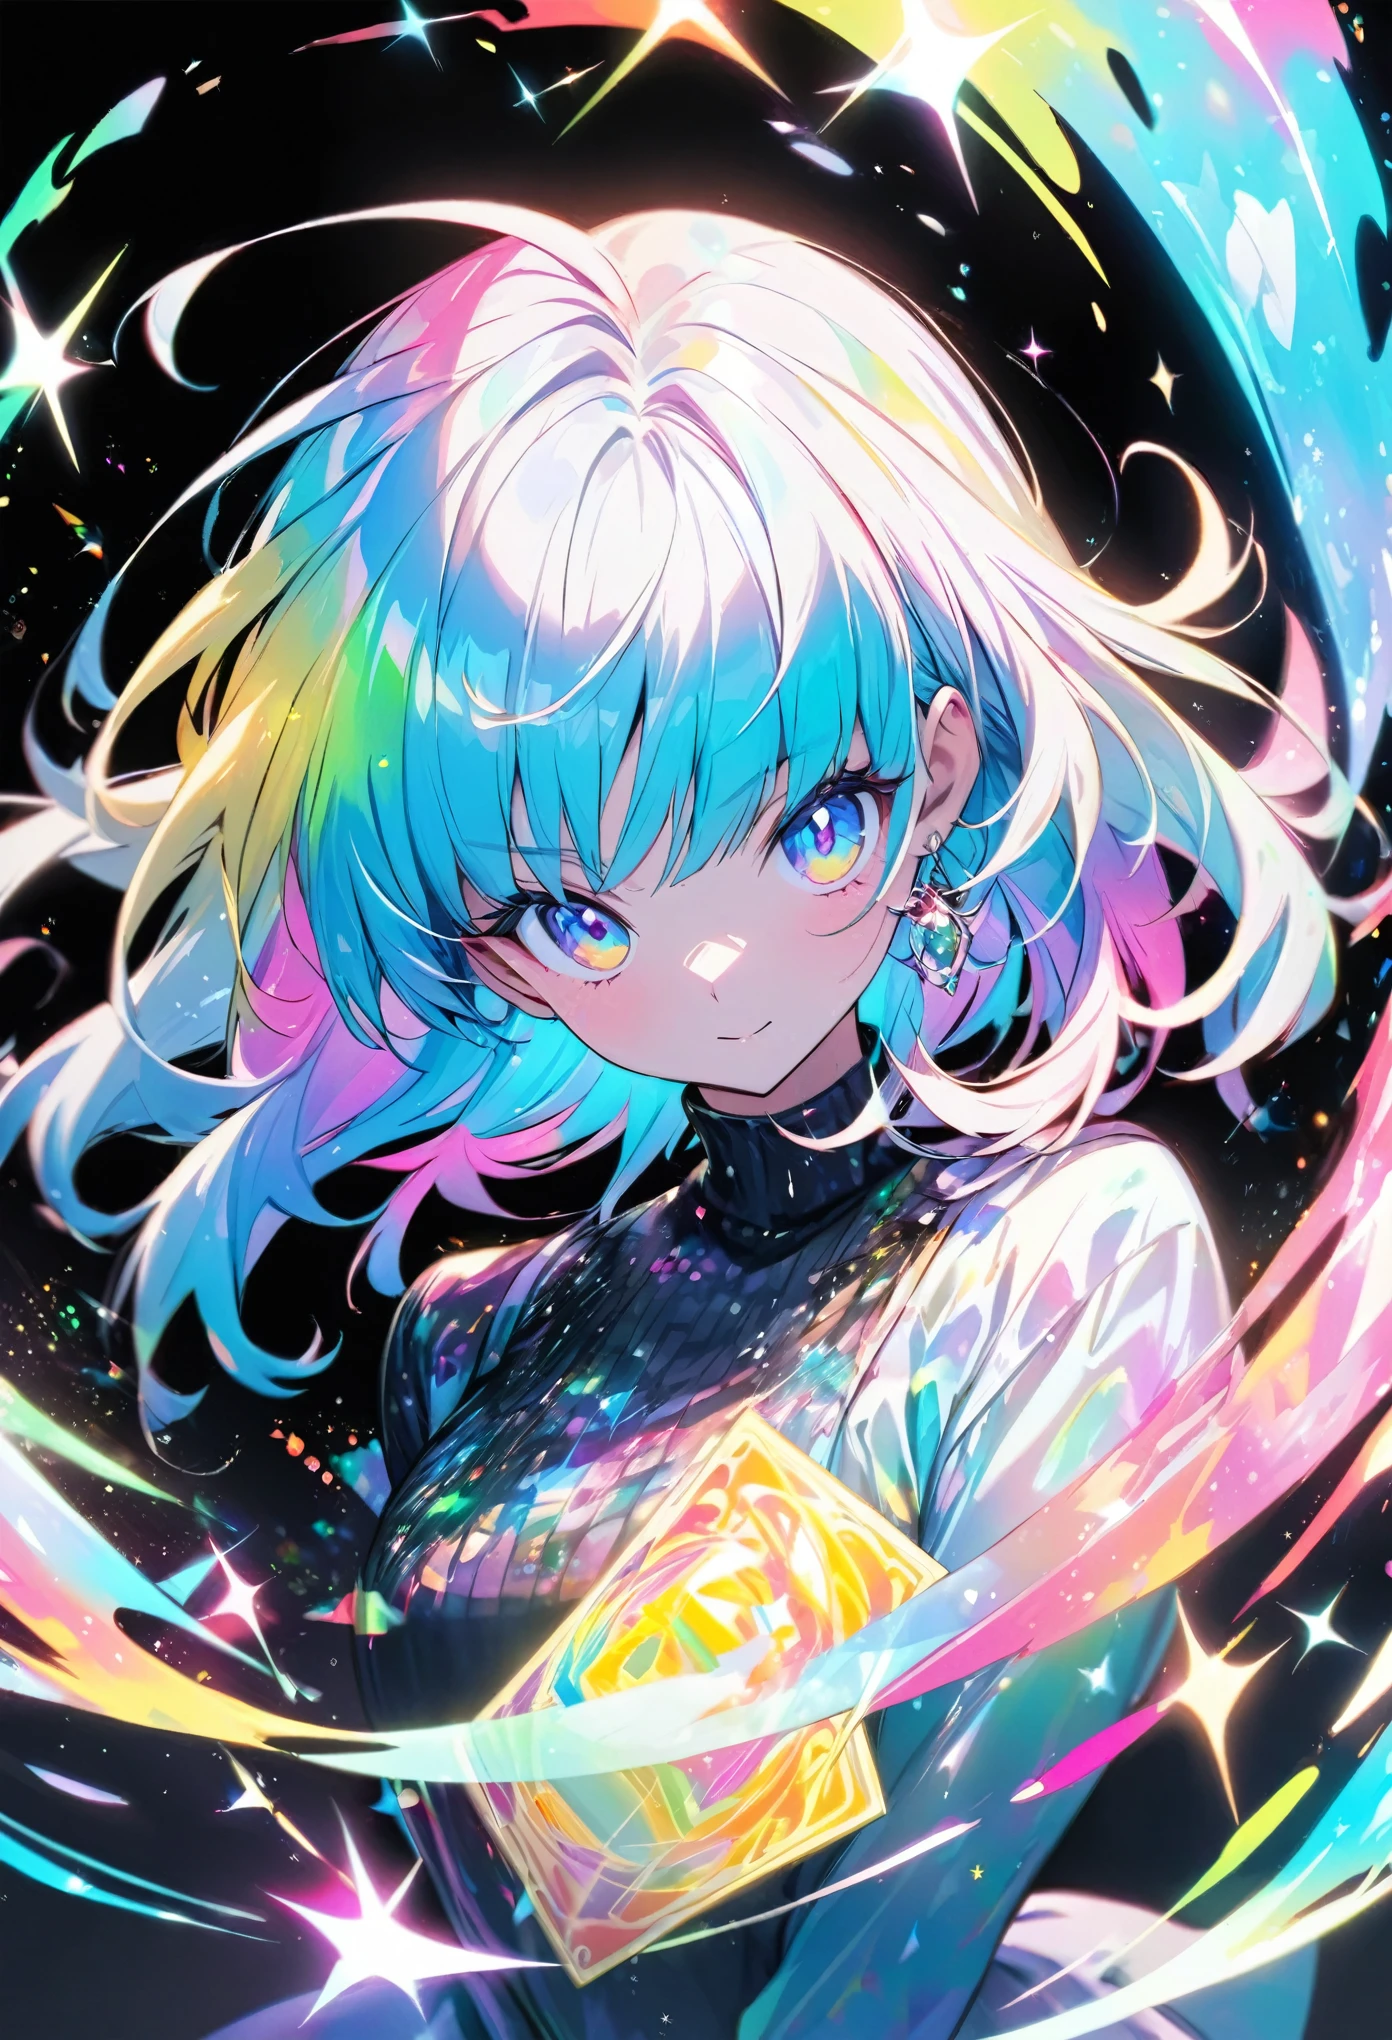 Um cartão holográfico de alta qualidade representando uma garota estilo anime, com glitter, madrepérola, e um fundo preto ao redor do cartão, coloração clara, e colorido